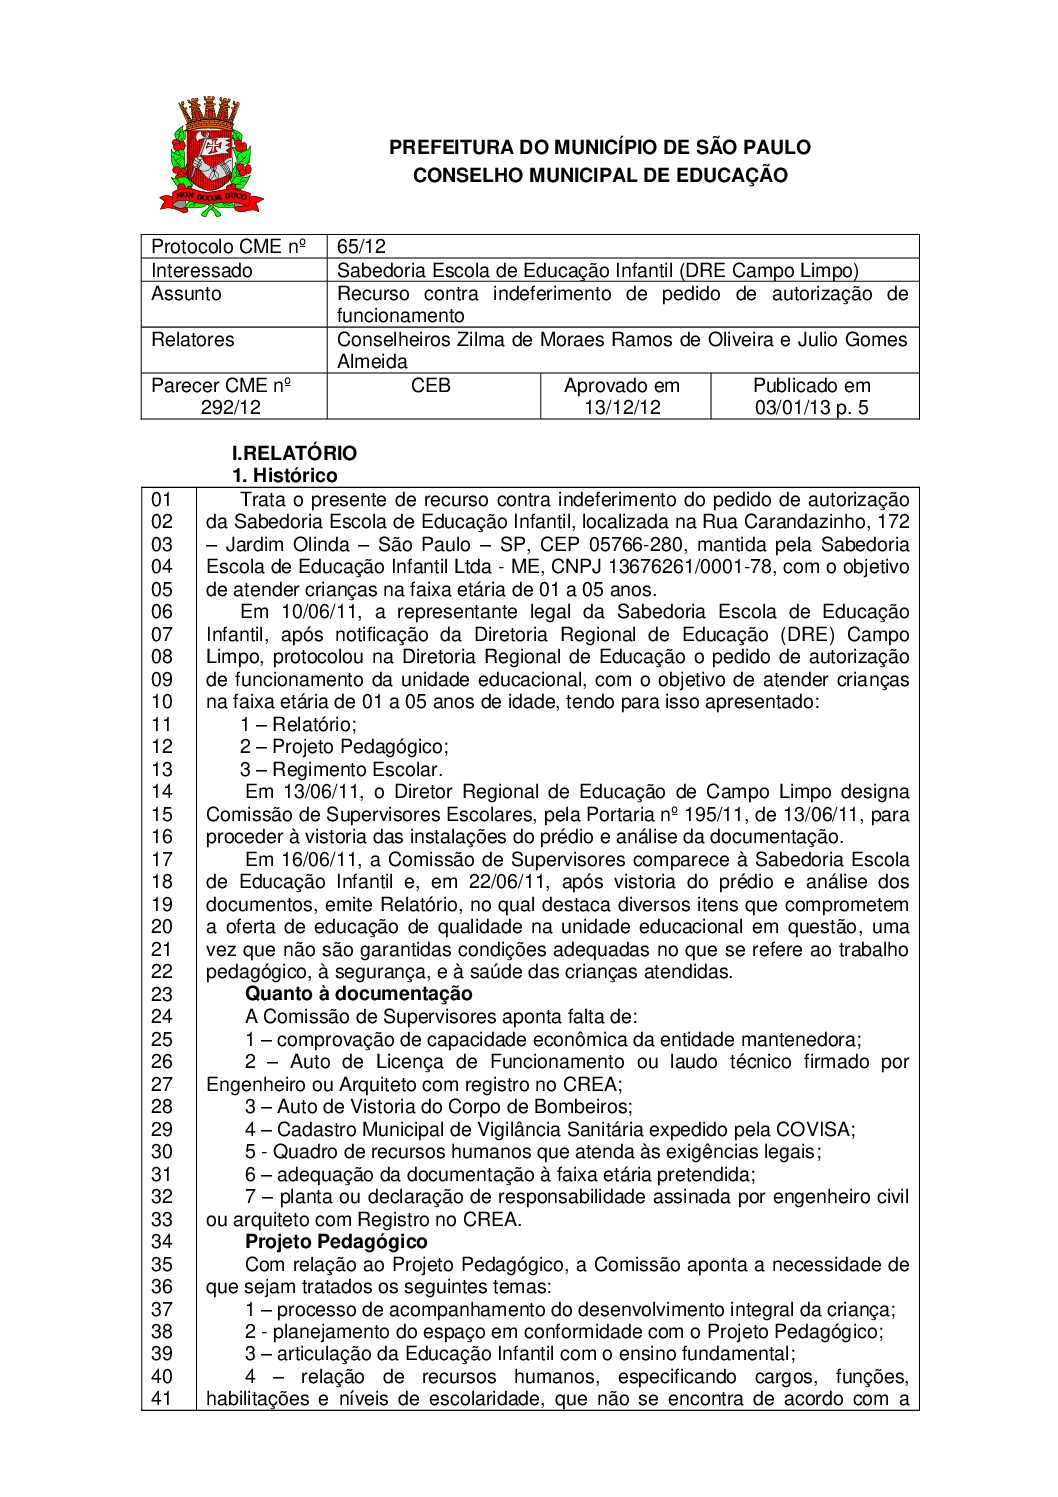 Parecer CME nº 292/2012 - Sabedoria Escola de Educação Infantil (DRE Campo Limpo) - Recurso contra indeferimento de pedido de autorização de funcionamento 